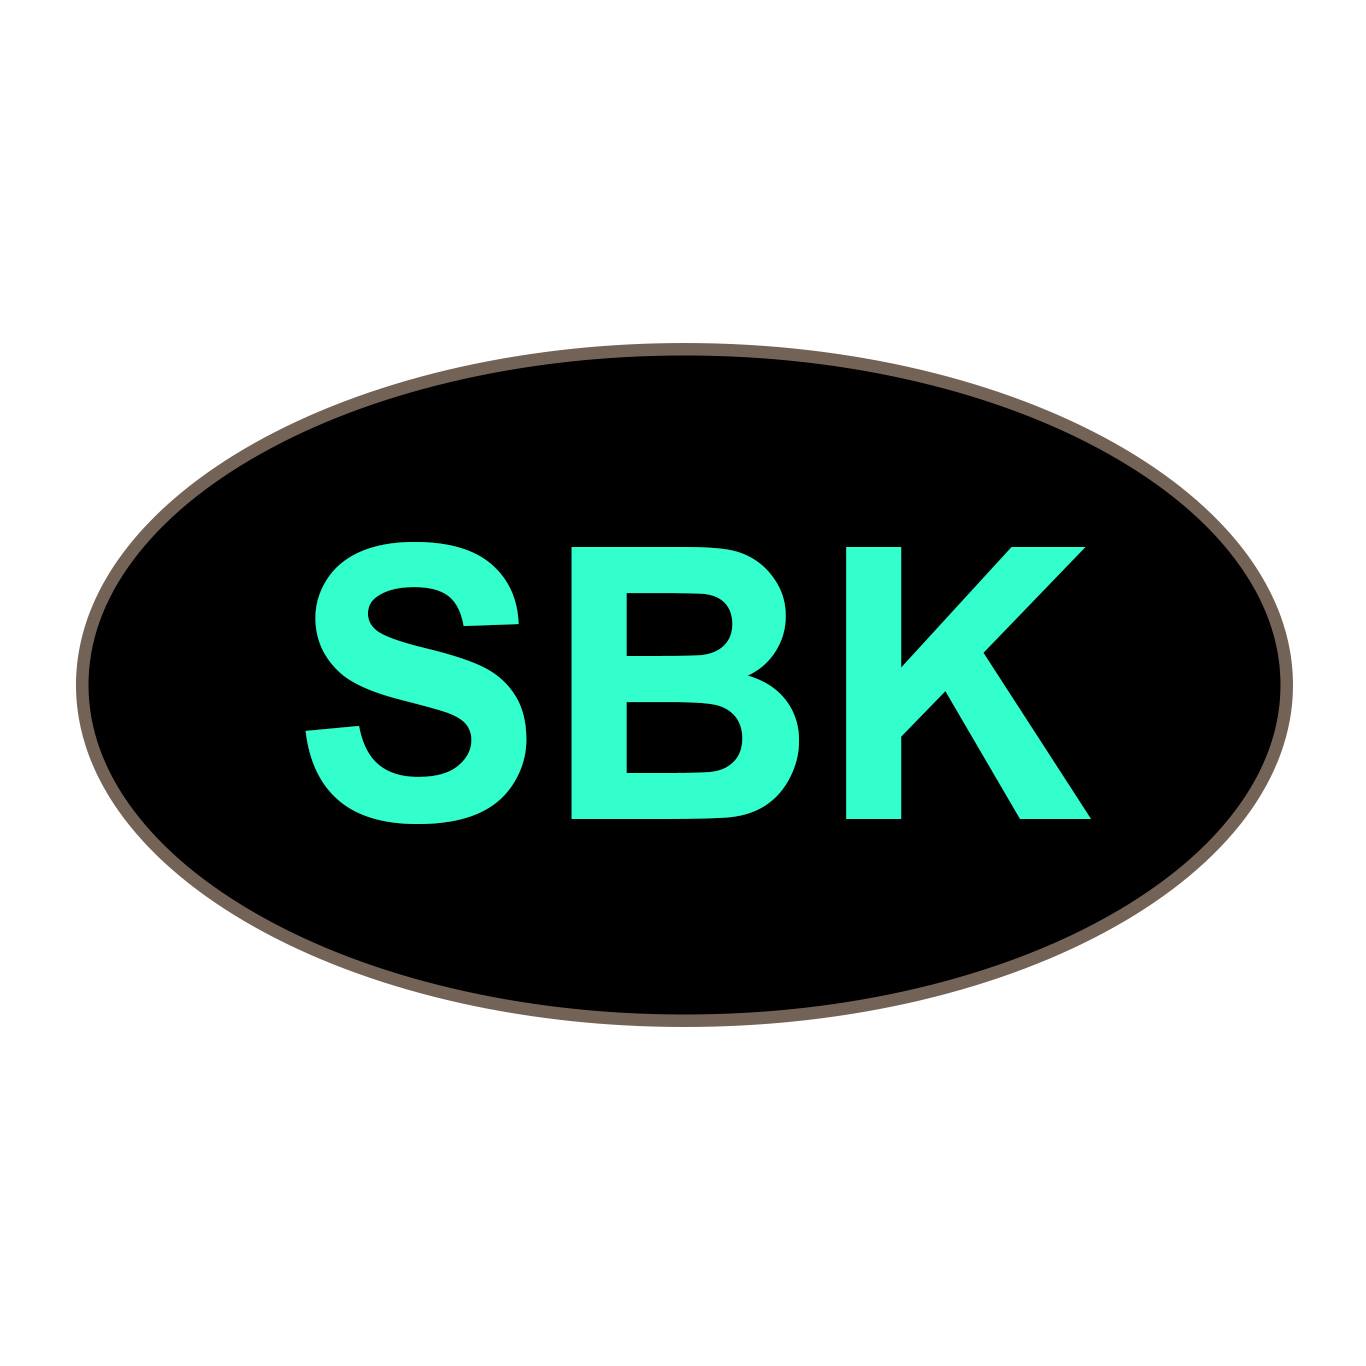 Company logo of Seattle's Best Karaoke/SBK